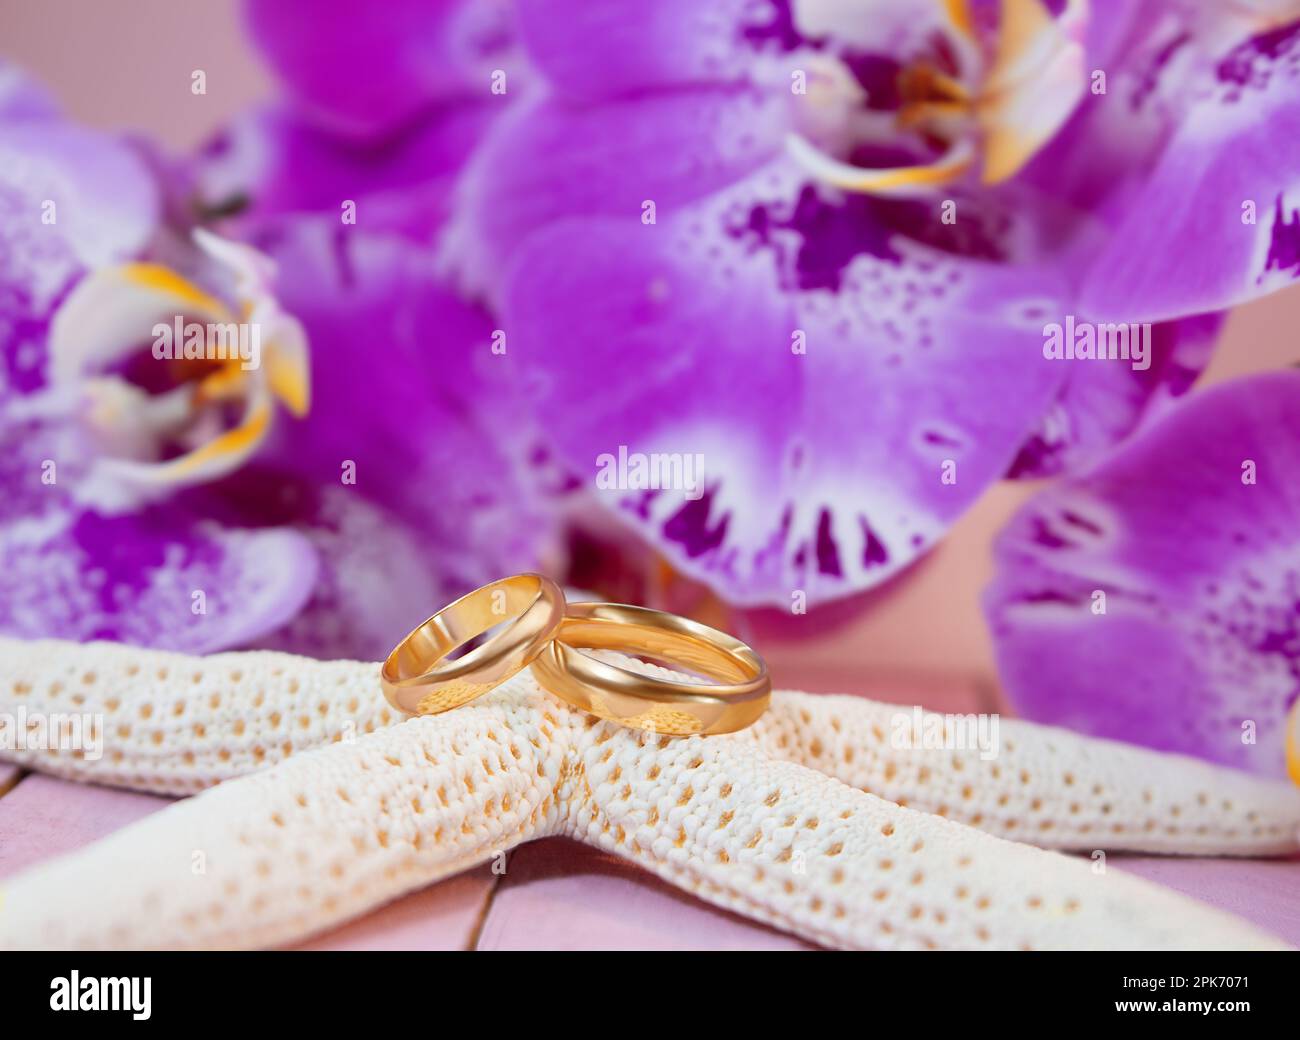 Mariage doré sur étoile de mer blanche derrière des orchidées pourpres sur panneau de bois rose. Célébrations, cérémonies, lune de miel Banque D'Images